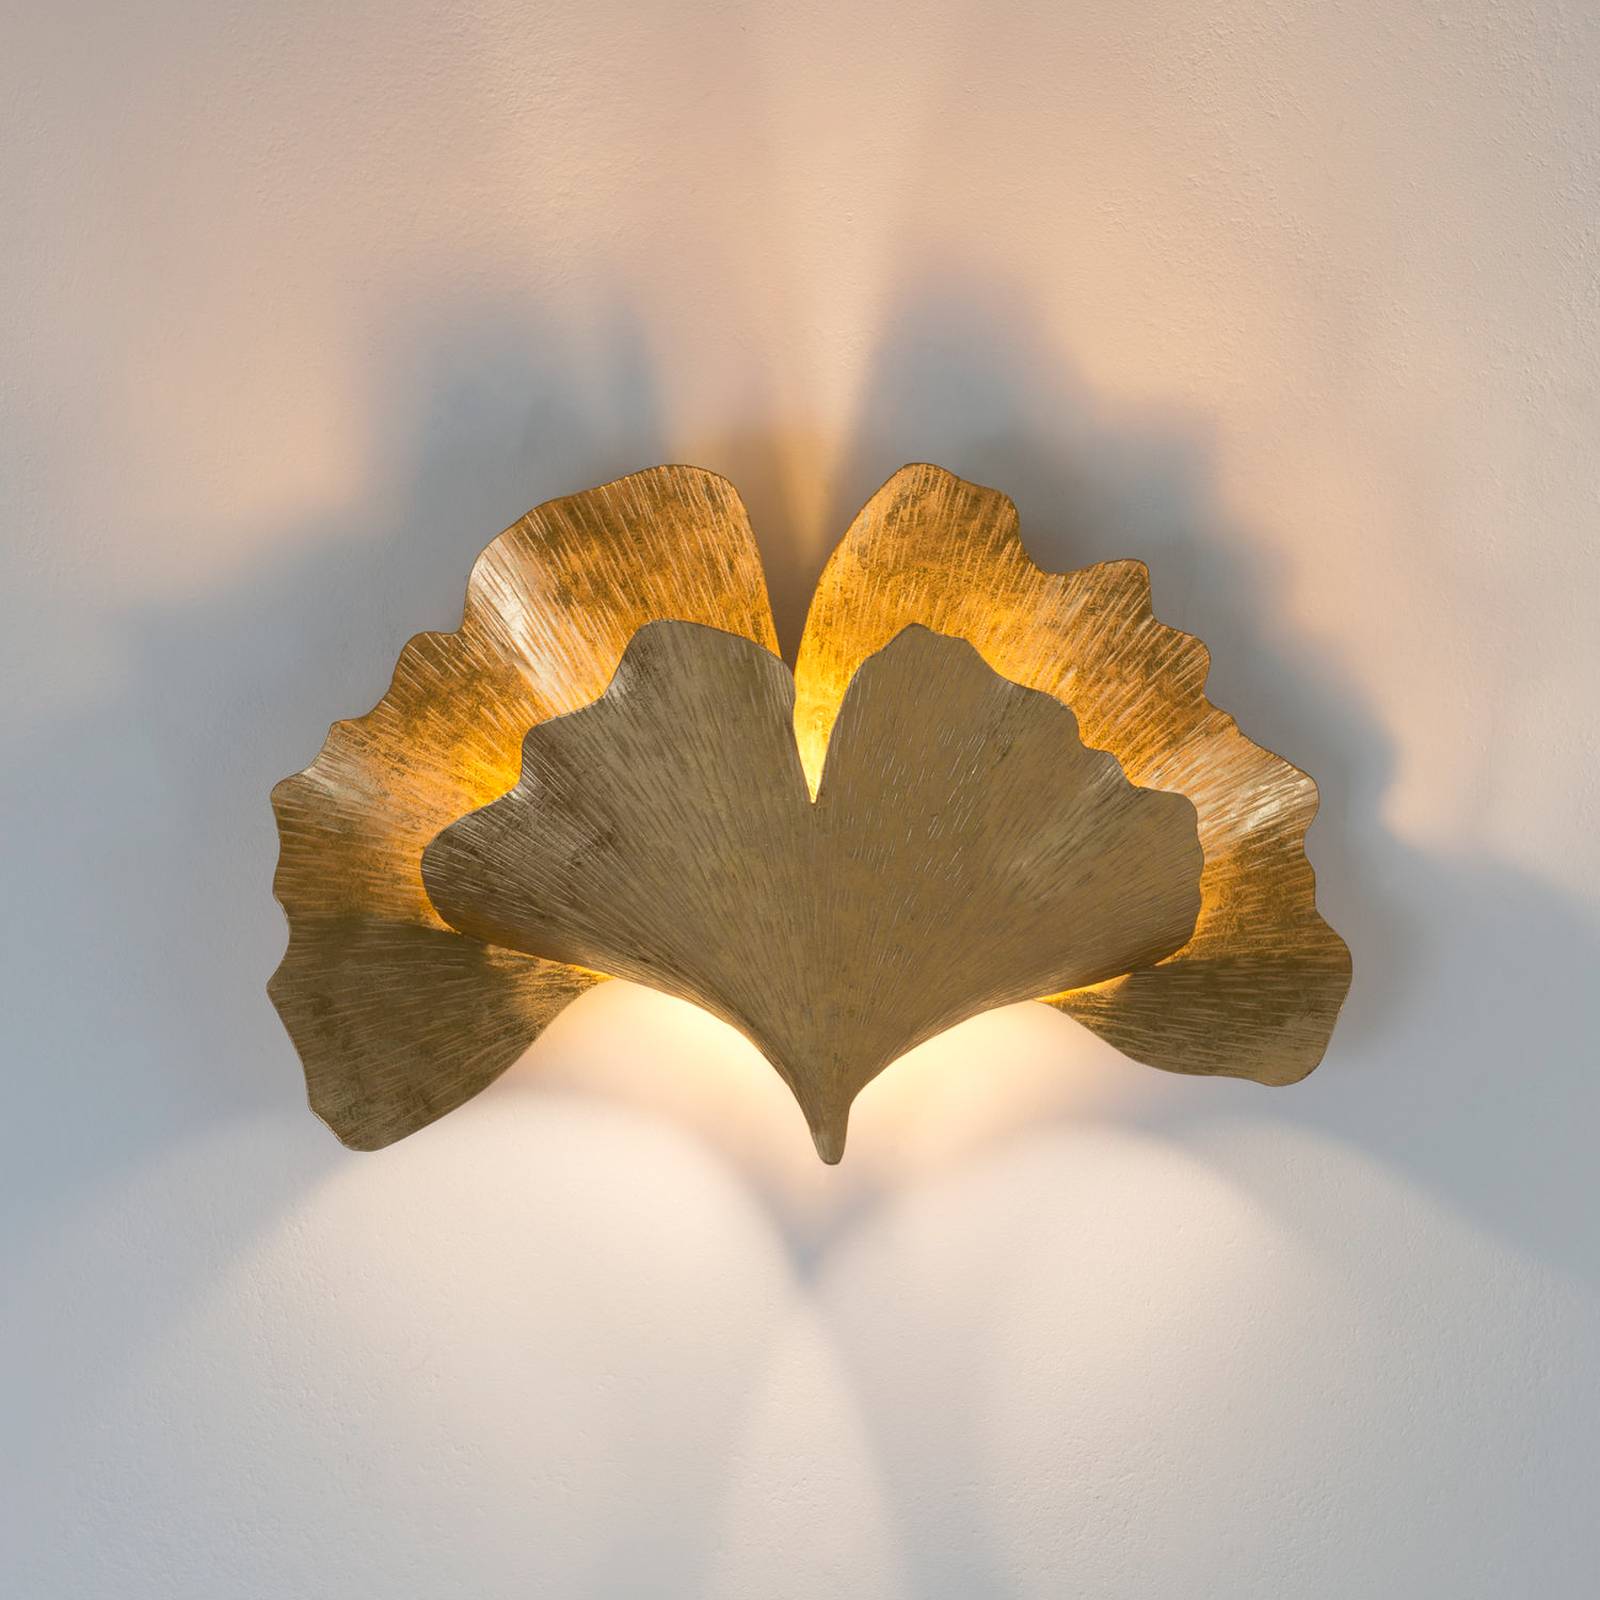 Holländer gingko fali lámpa, arany színű, szélesség 38 cm, vas